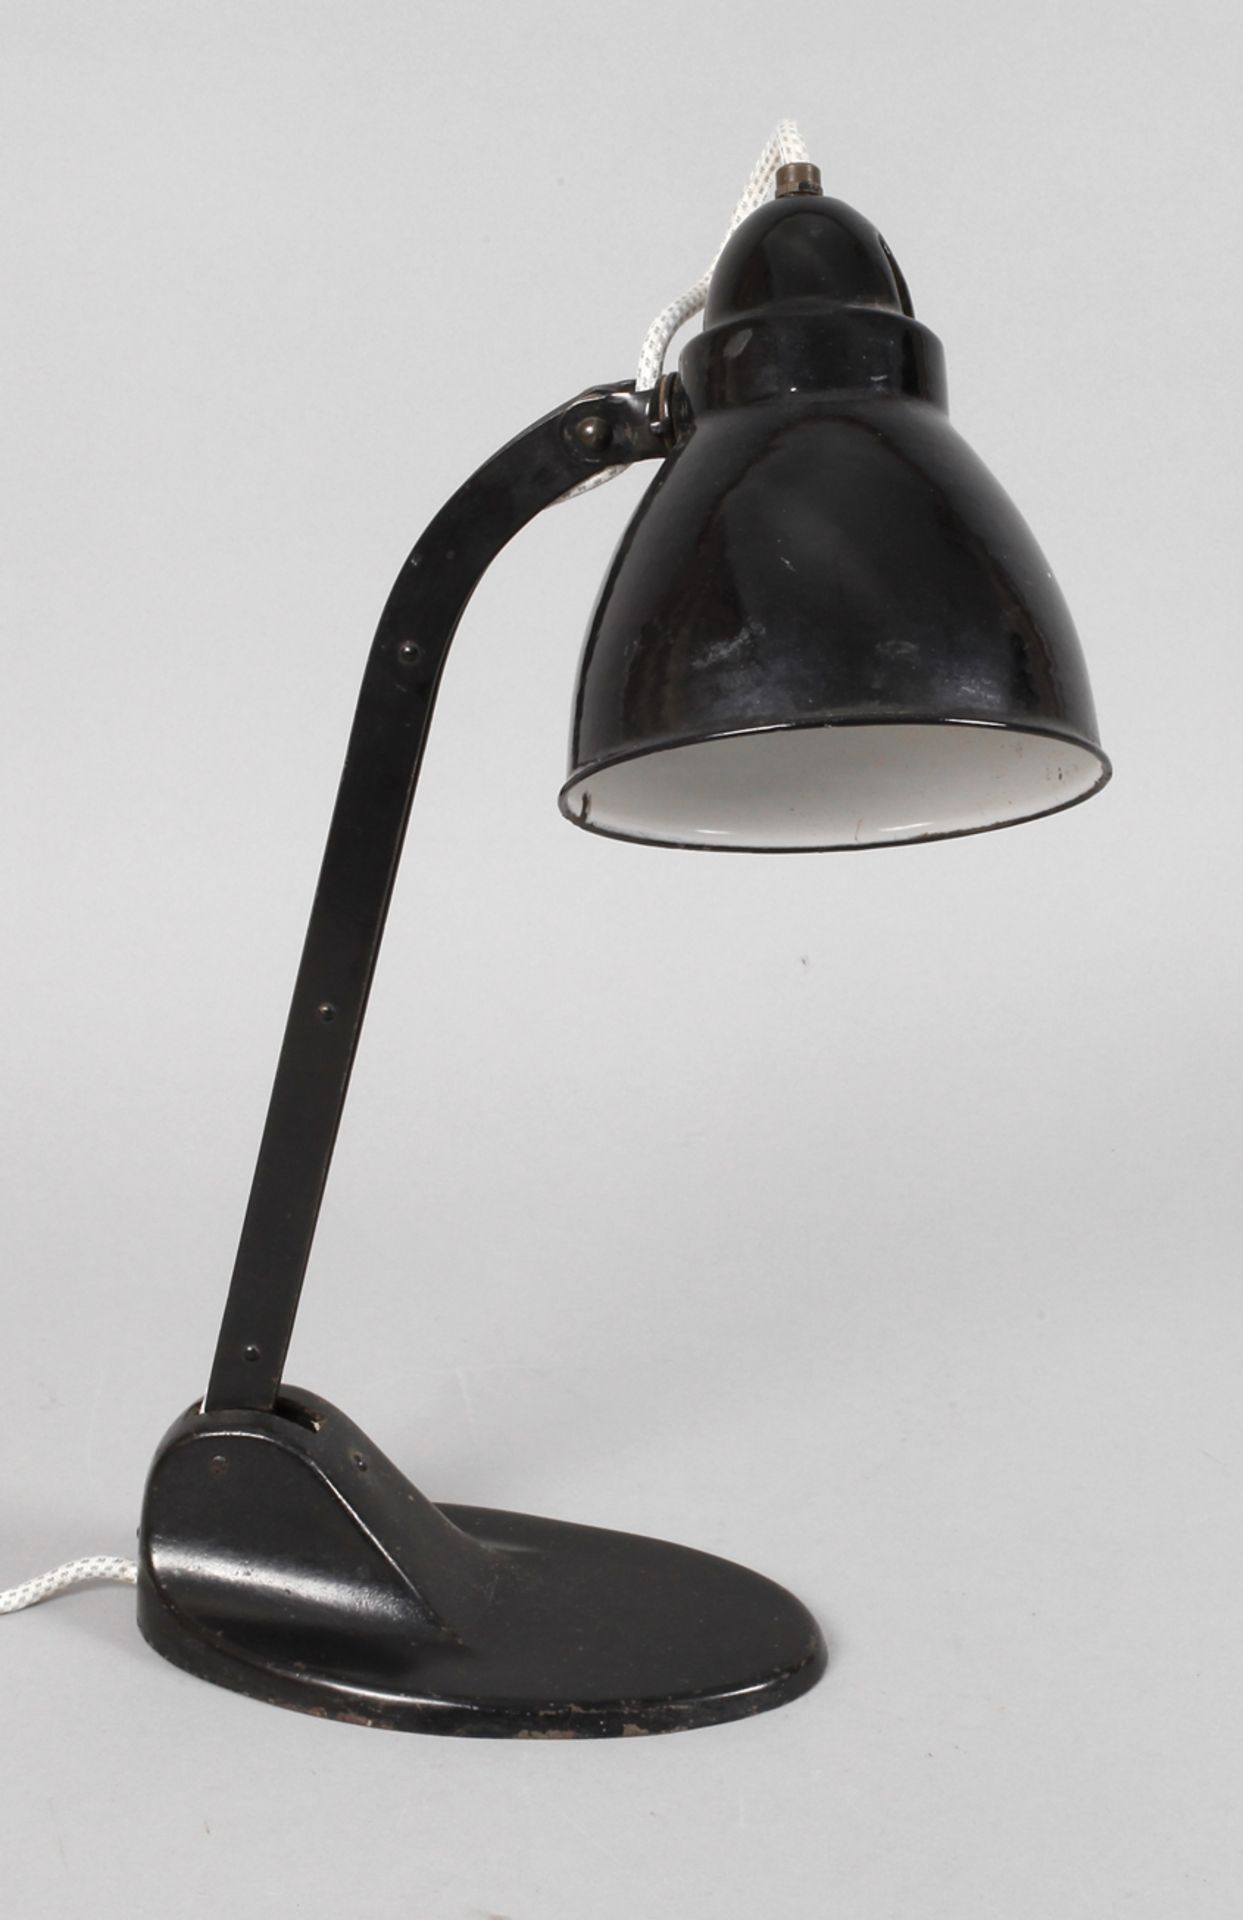 Schreibtischlampeum 1930, am Boden bezeichnet Viktoria-Lampe, geschwärzter Eisengussfuß, mit